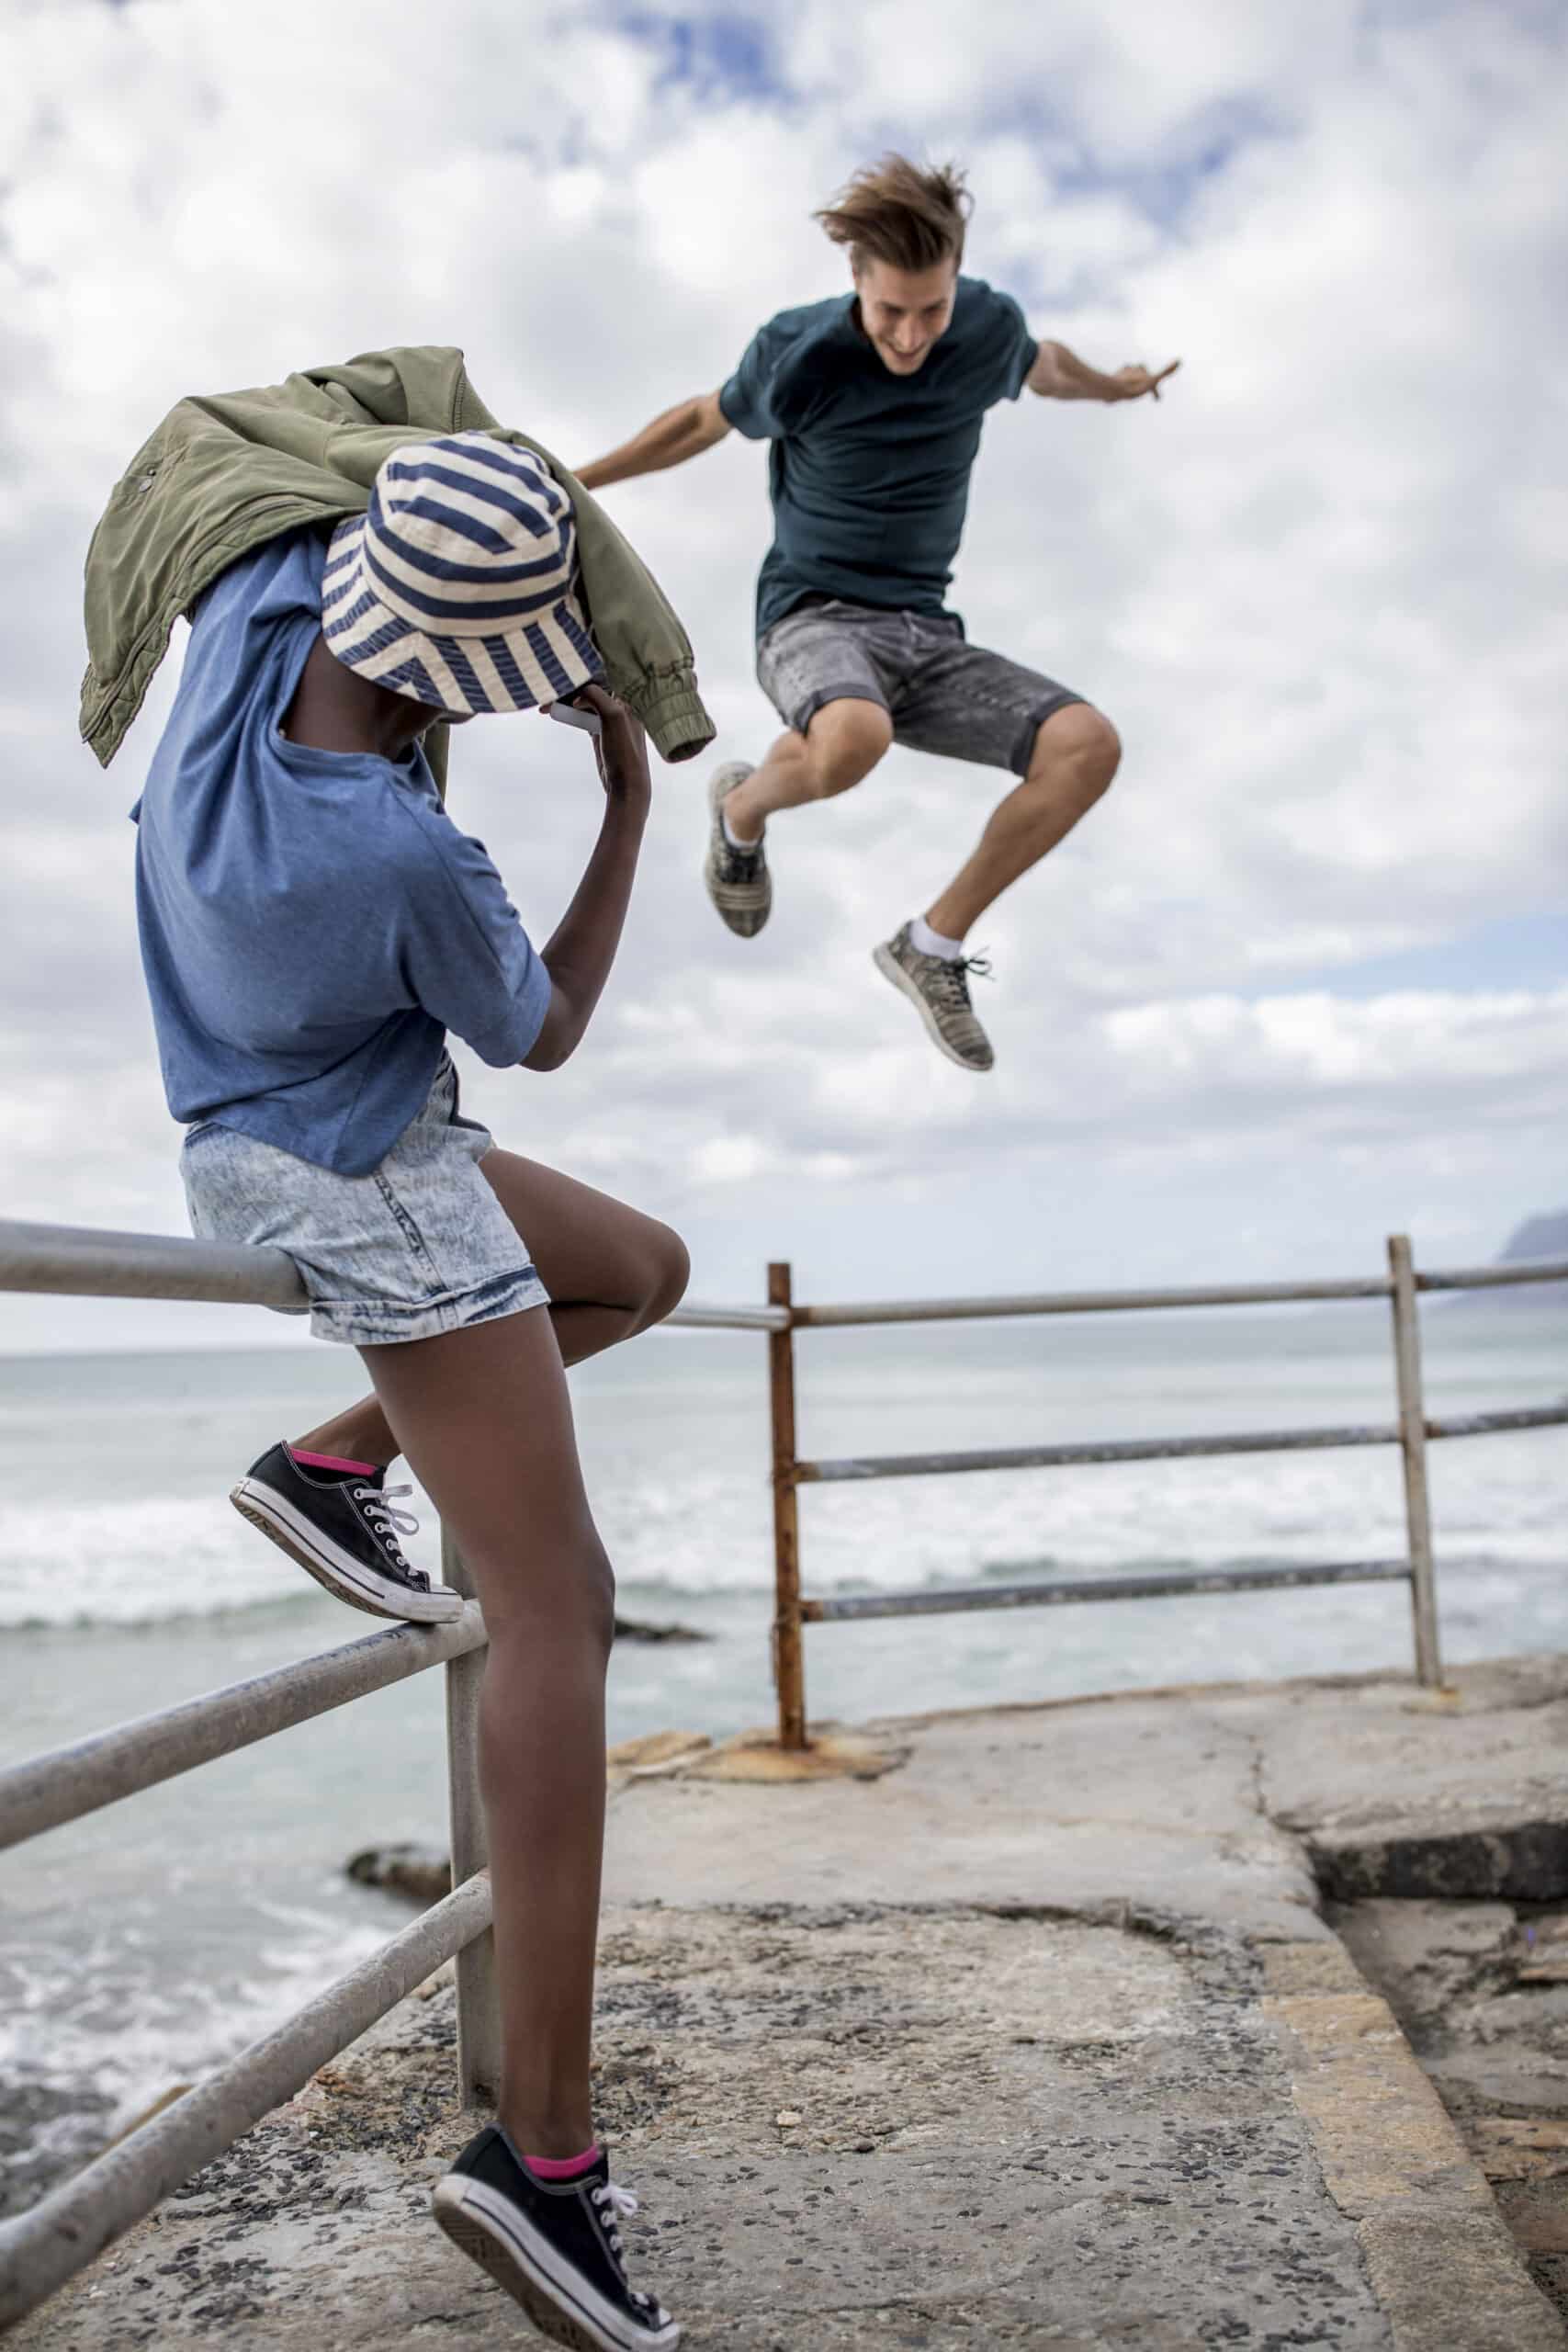 Ein kleiner Junge springt über ein Metallgeländer am Meer, während sich ein anderer Junge mit seinem Hut in der Hand zum Sprung bereit macht. Im Hintergrund brechen Meereswellen unter einem bewölkten Himmel. © Fotografie Tomas Rodriguez